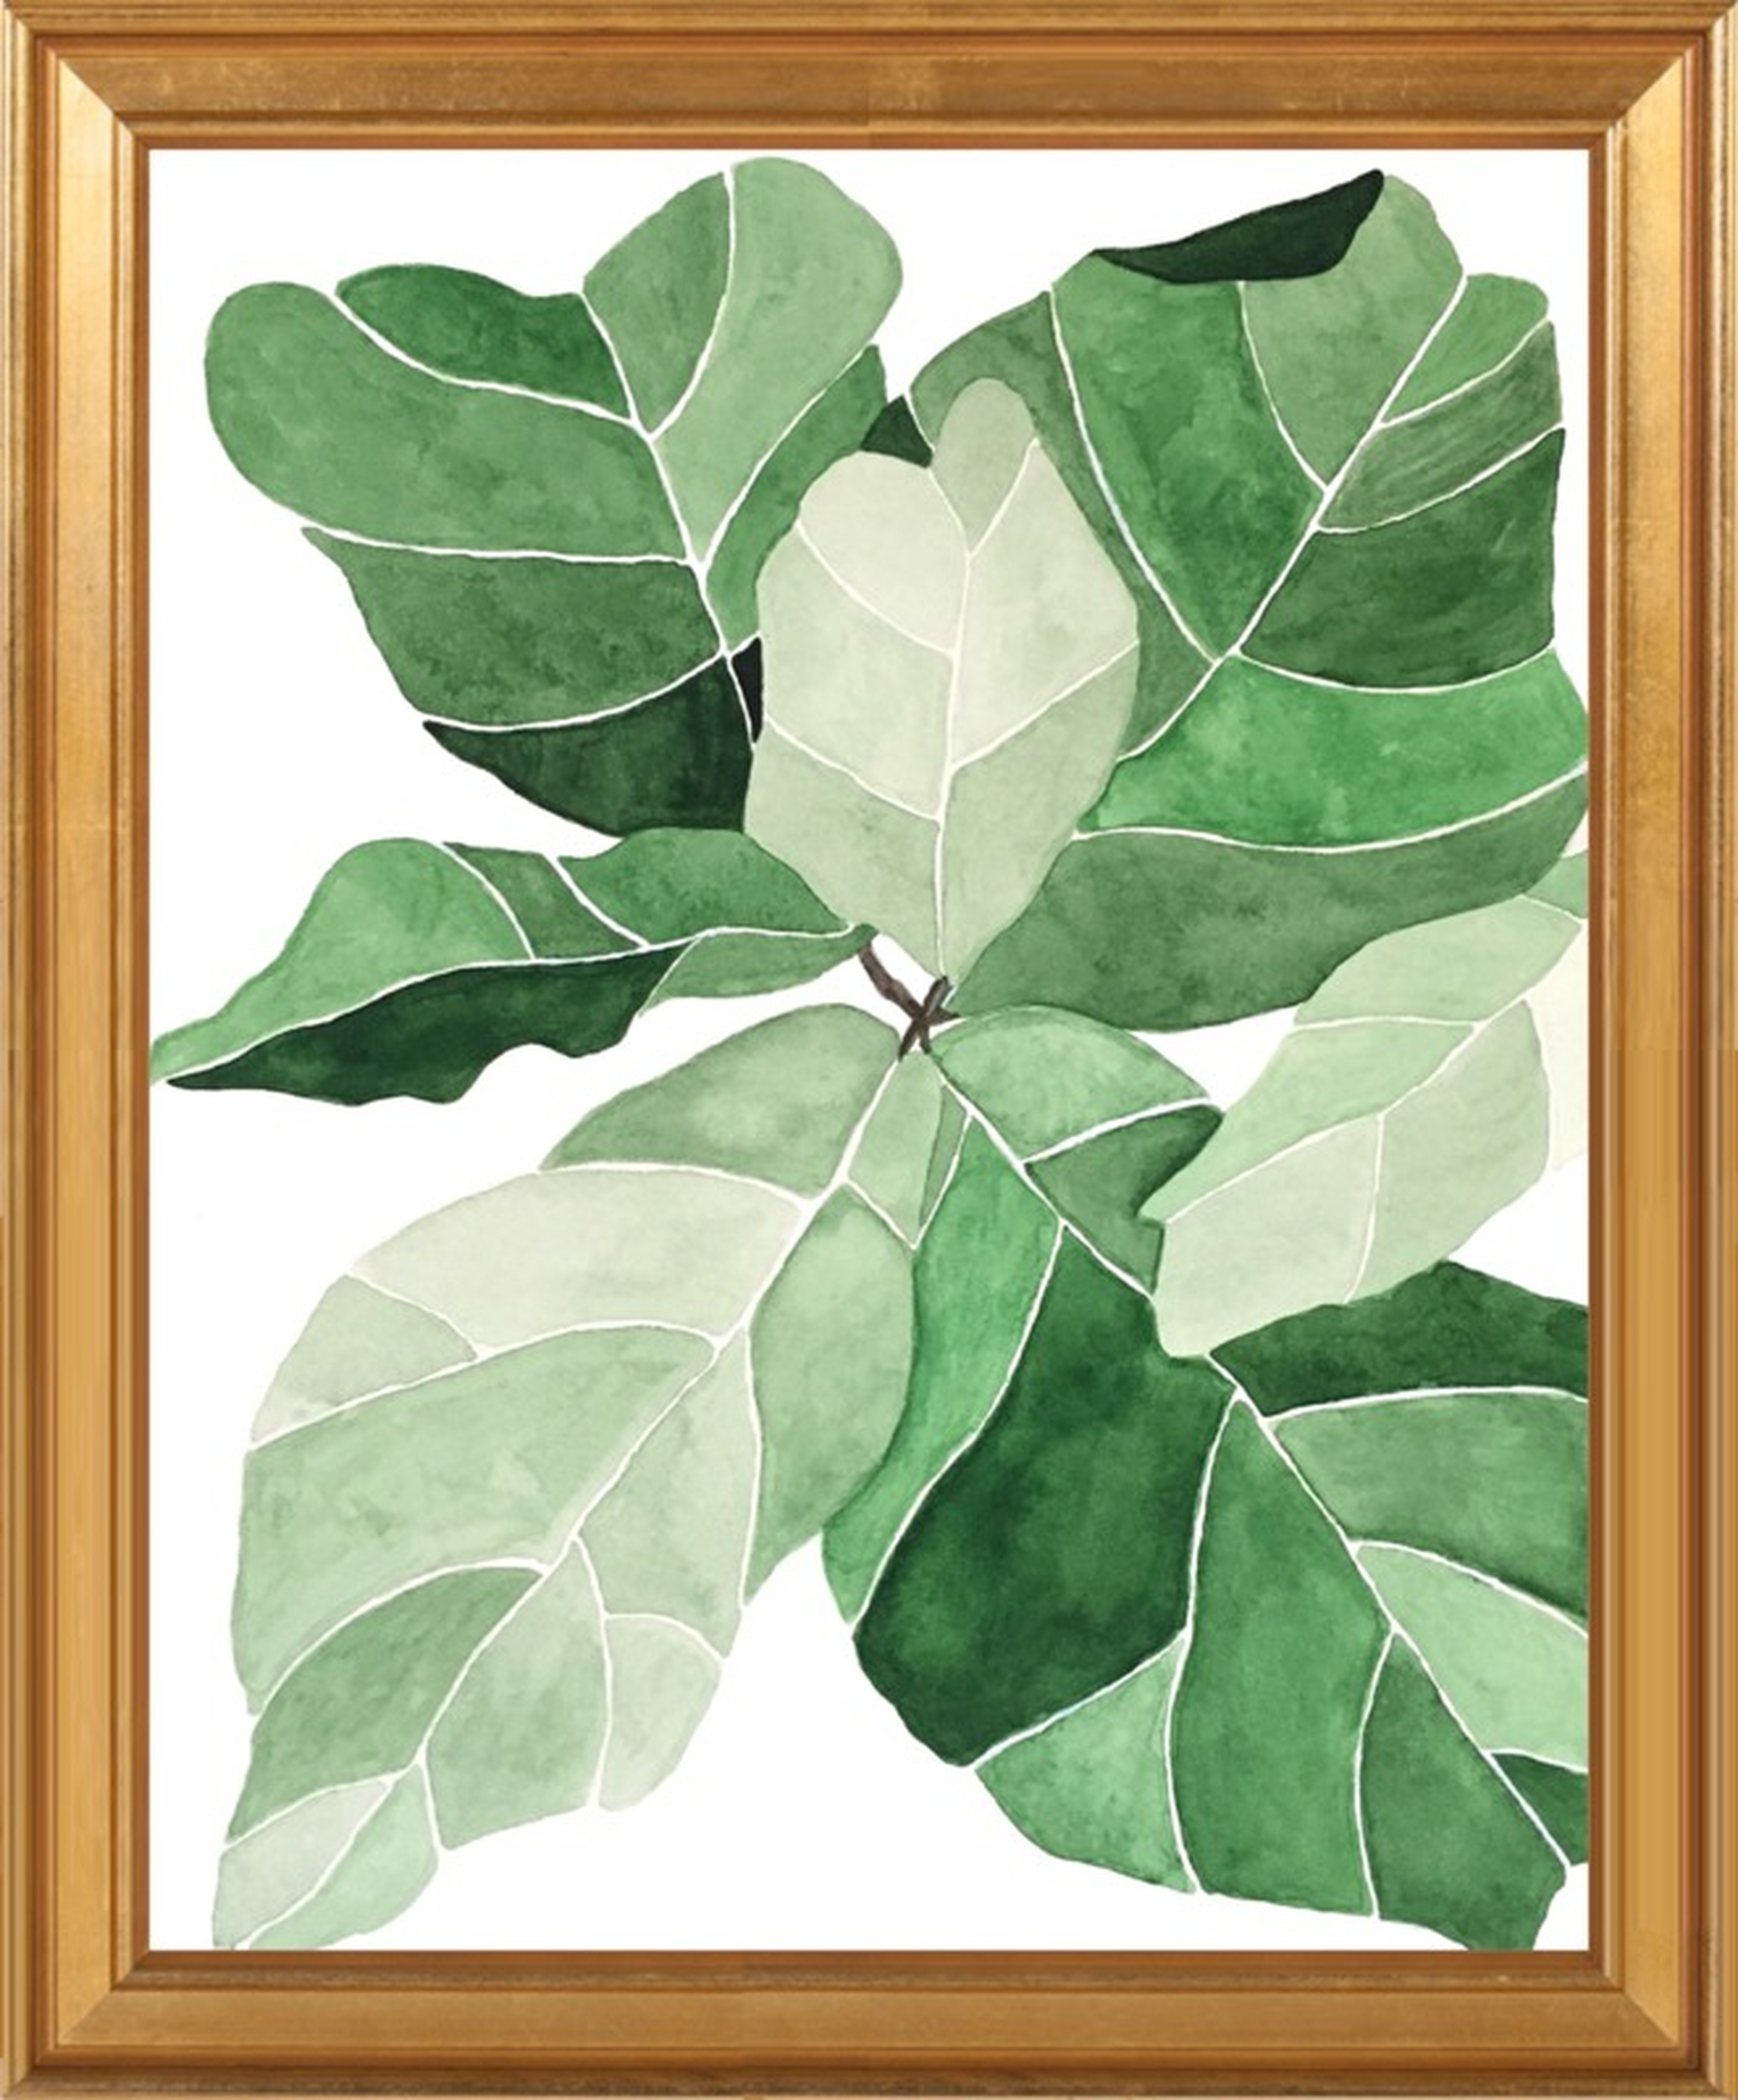 Fiddle Leaf Fig by Emily Grady Dodge for Artfully Walls - Artfully Walls